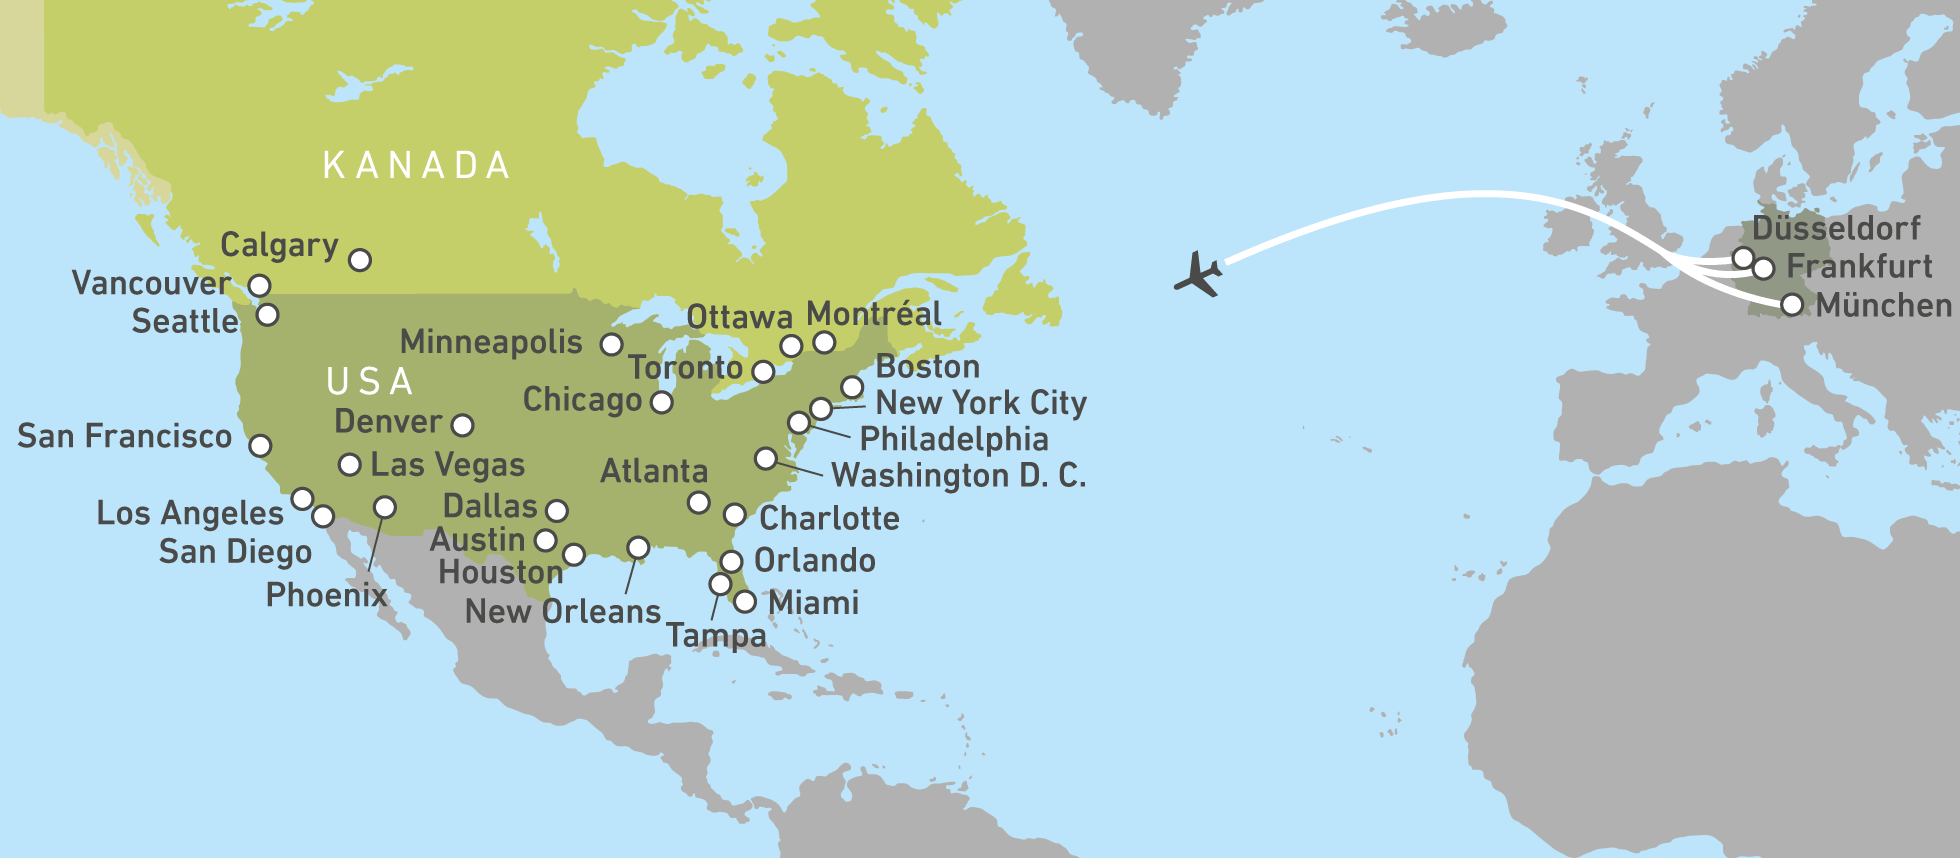 Lufthansa Nonstop Nach Kanada Oder In Die Usa Canusa